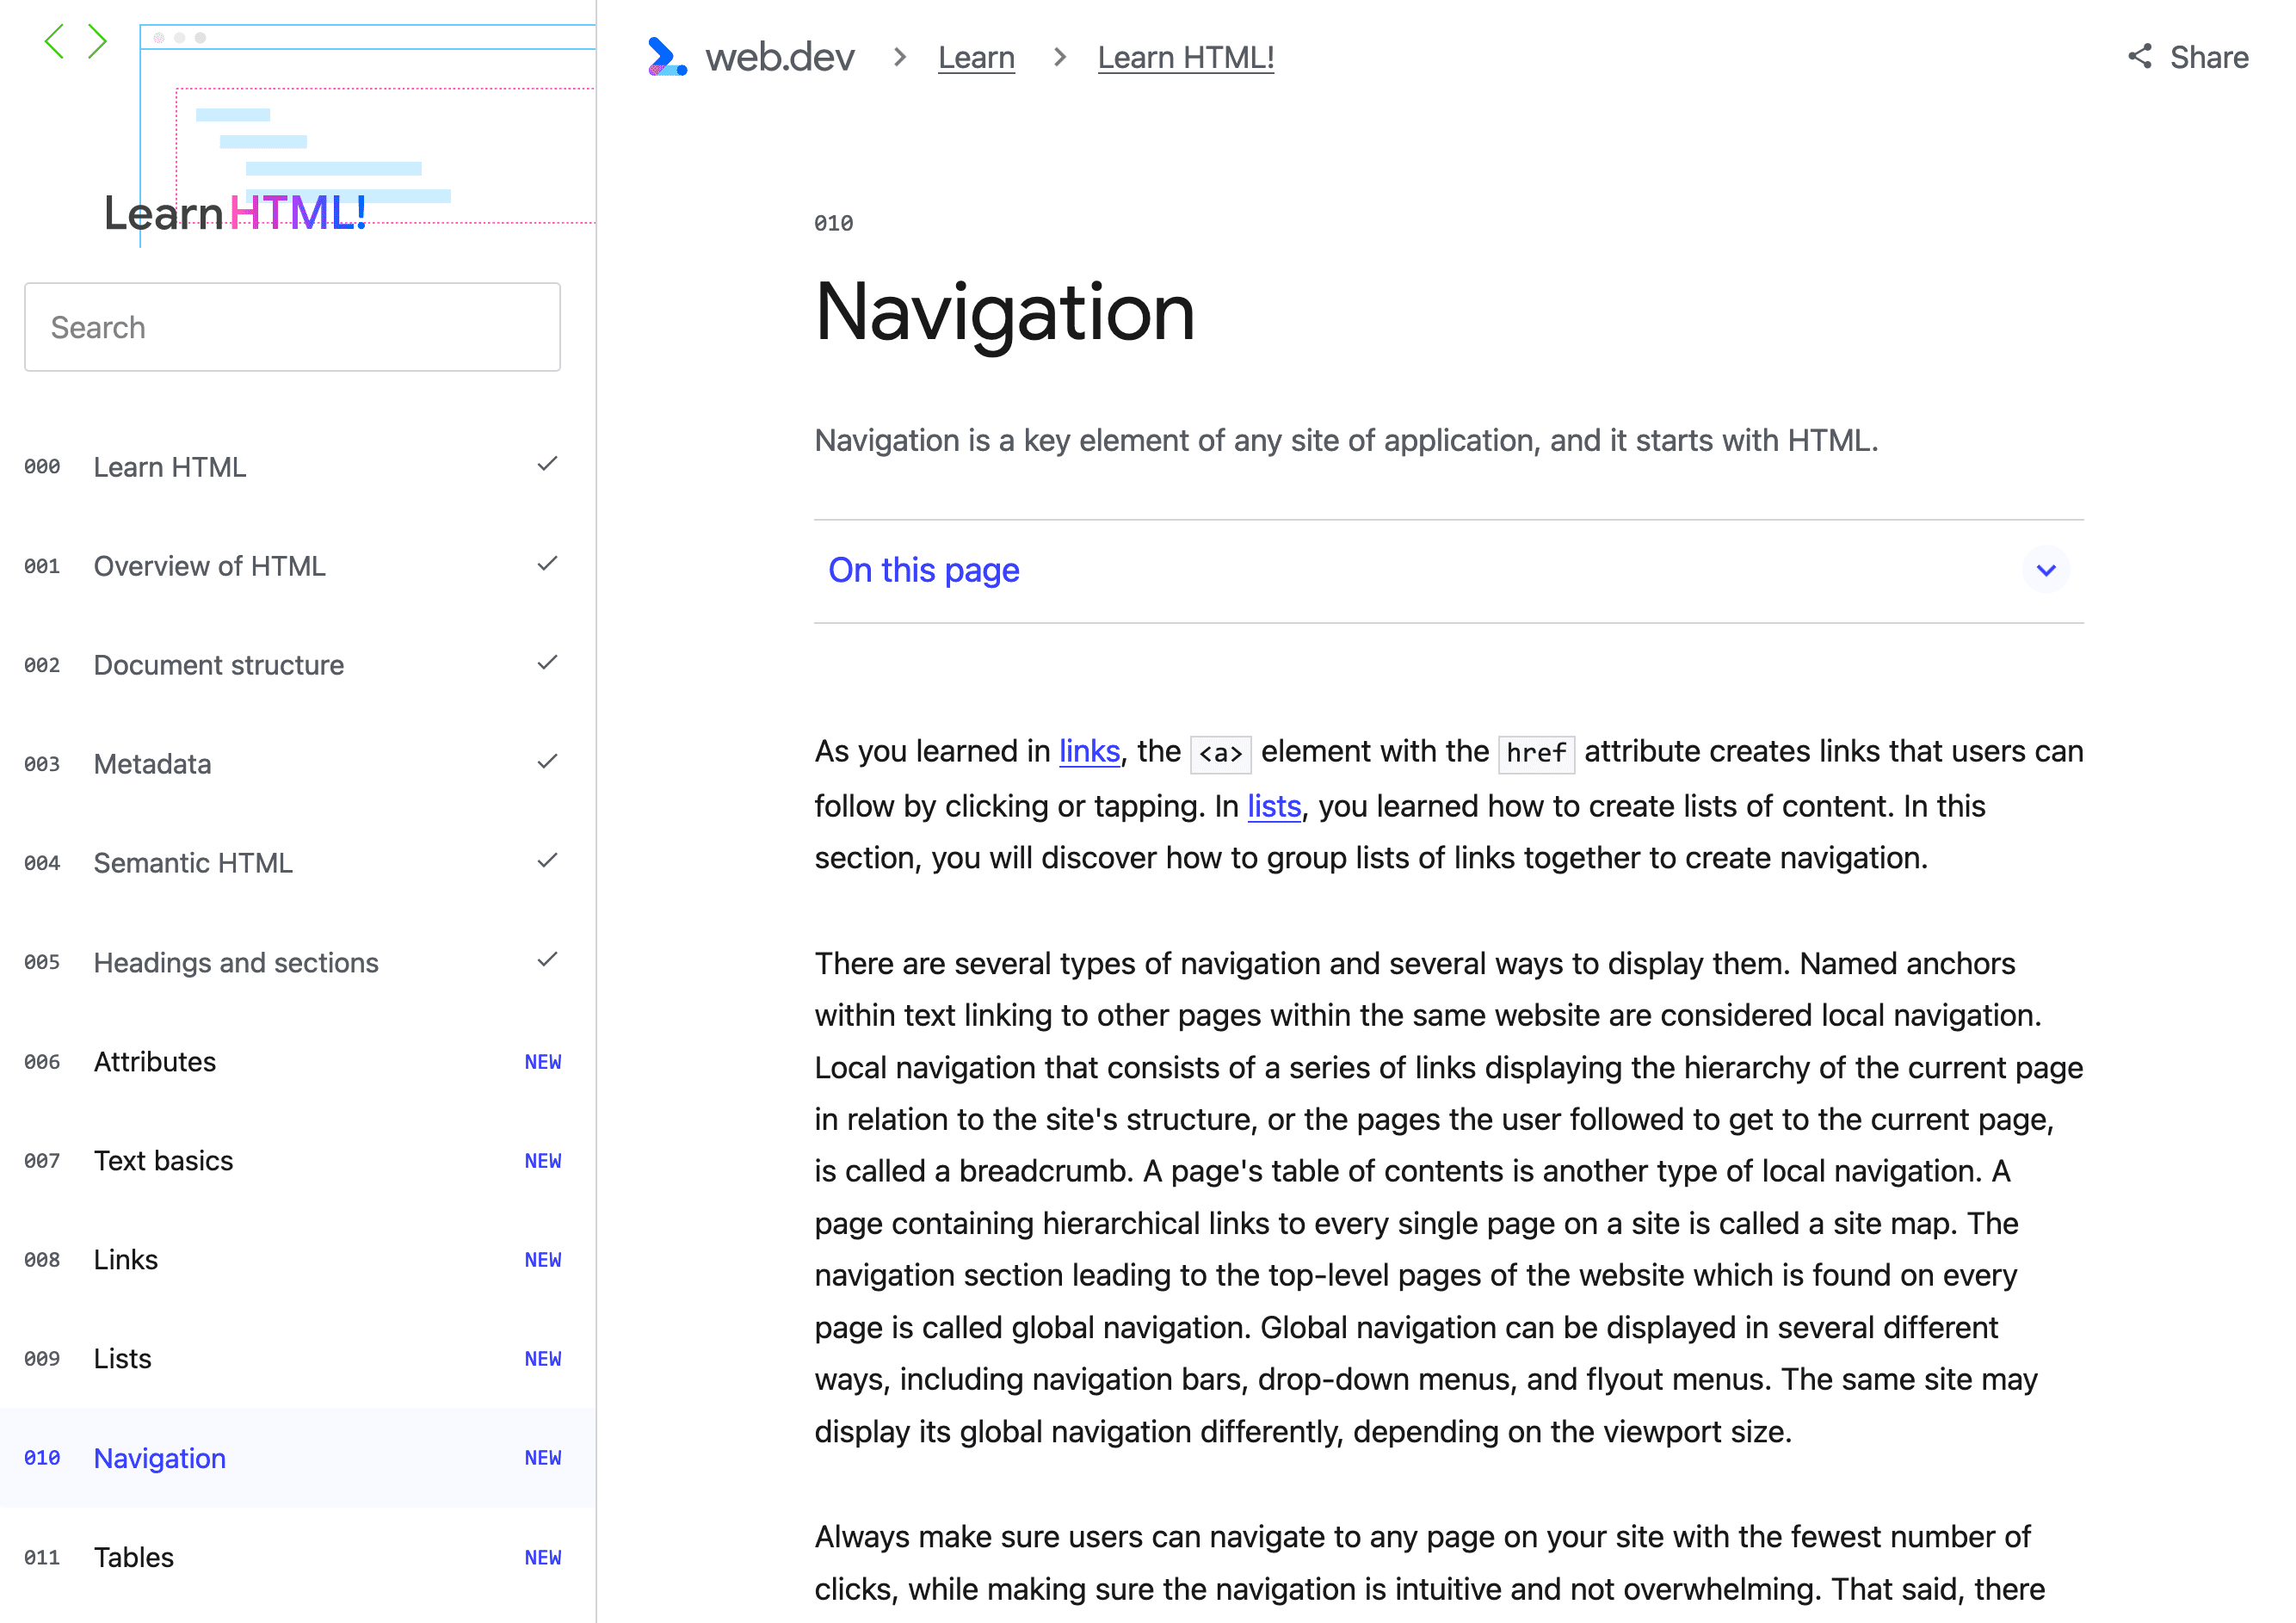 Первая страница этой страницы, включая навигационную цепочку вверху, кнопку для отображения оглавления этой страницы и локальную навигацию по серии.